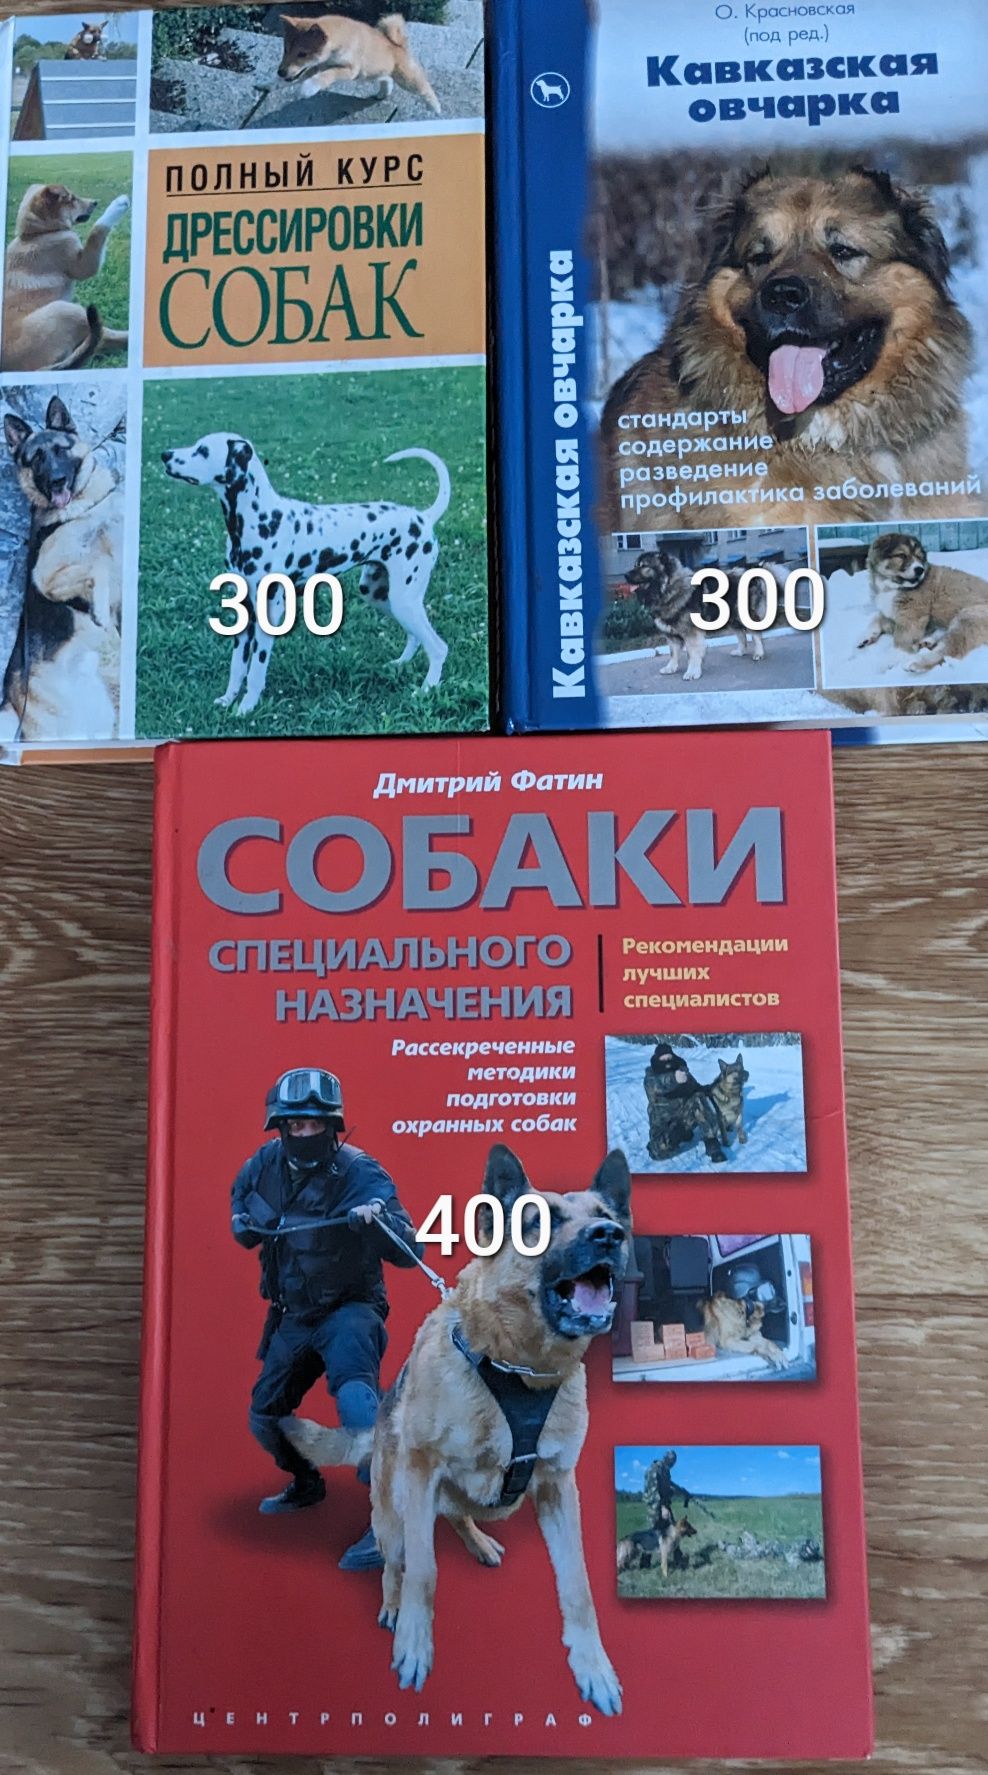 Книги про собак и животных